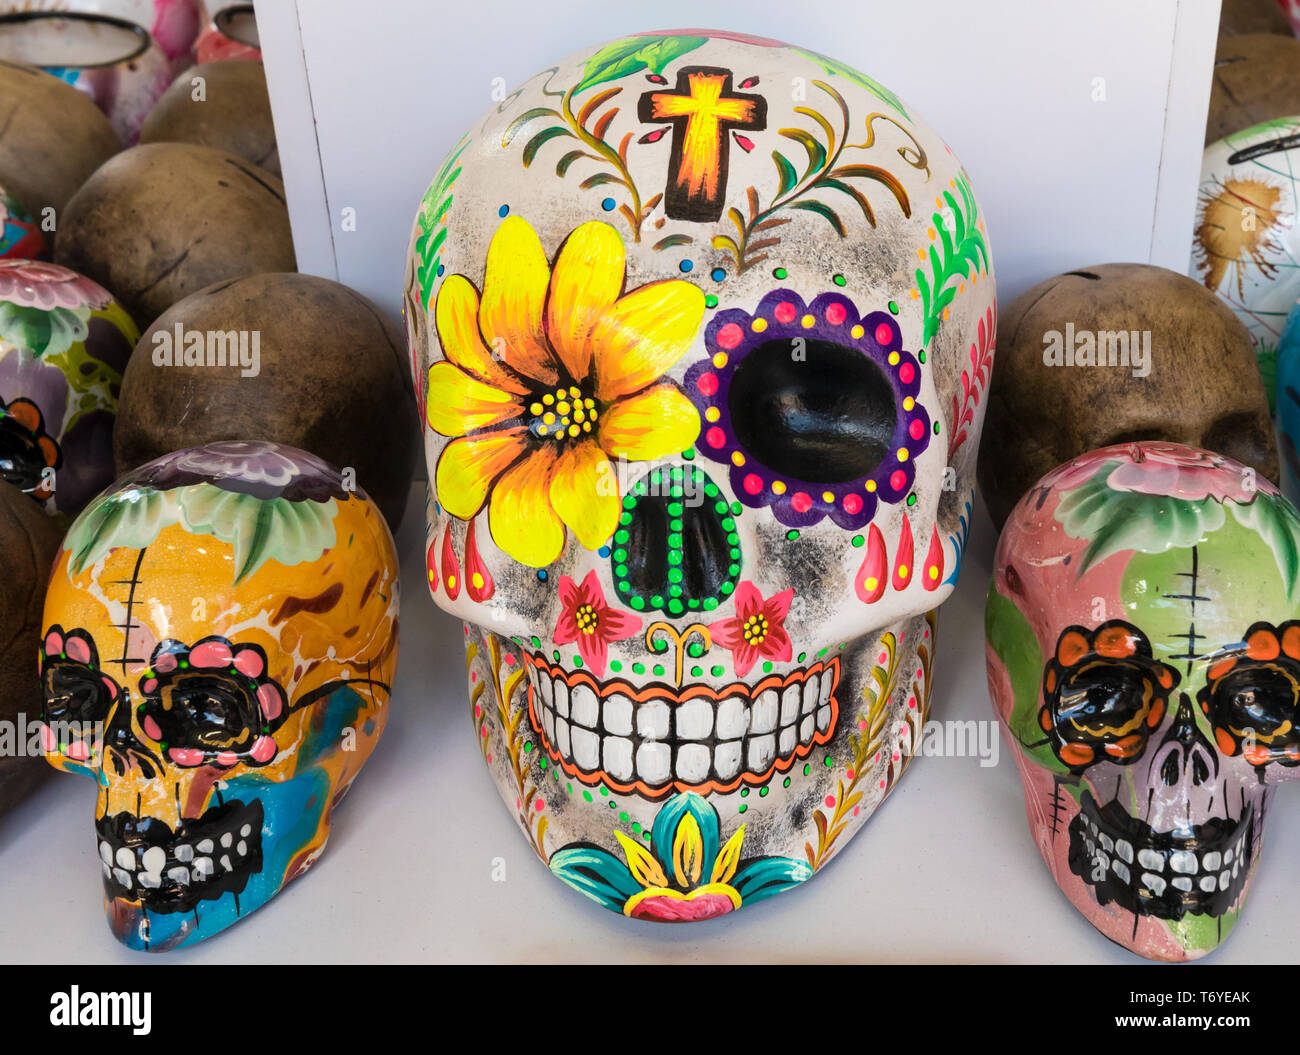 Cráneos de cerámica de distintos tamaños Foto de stock